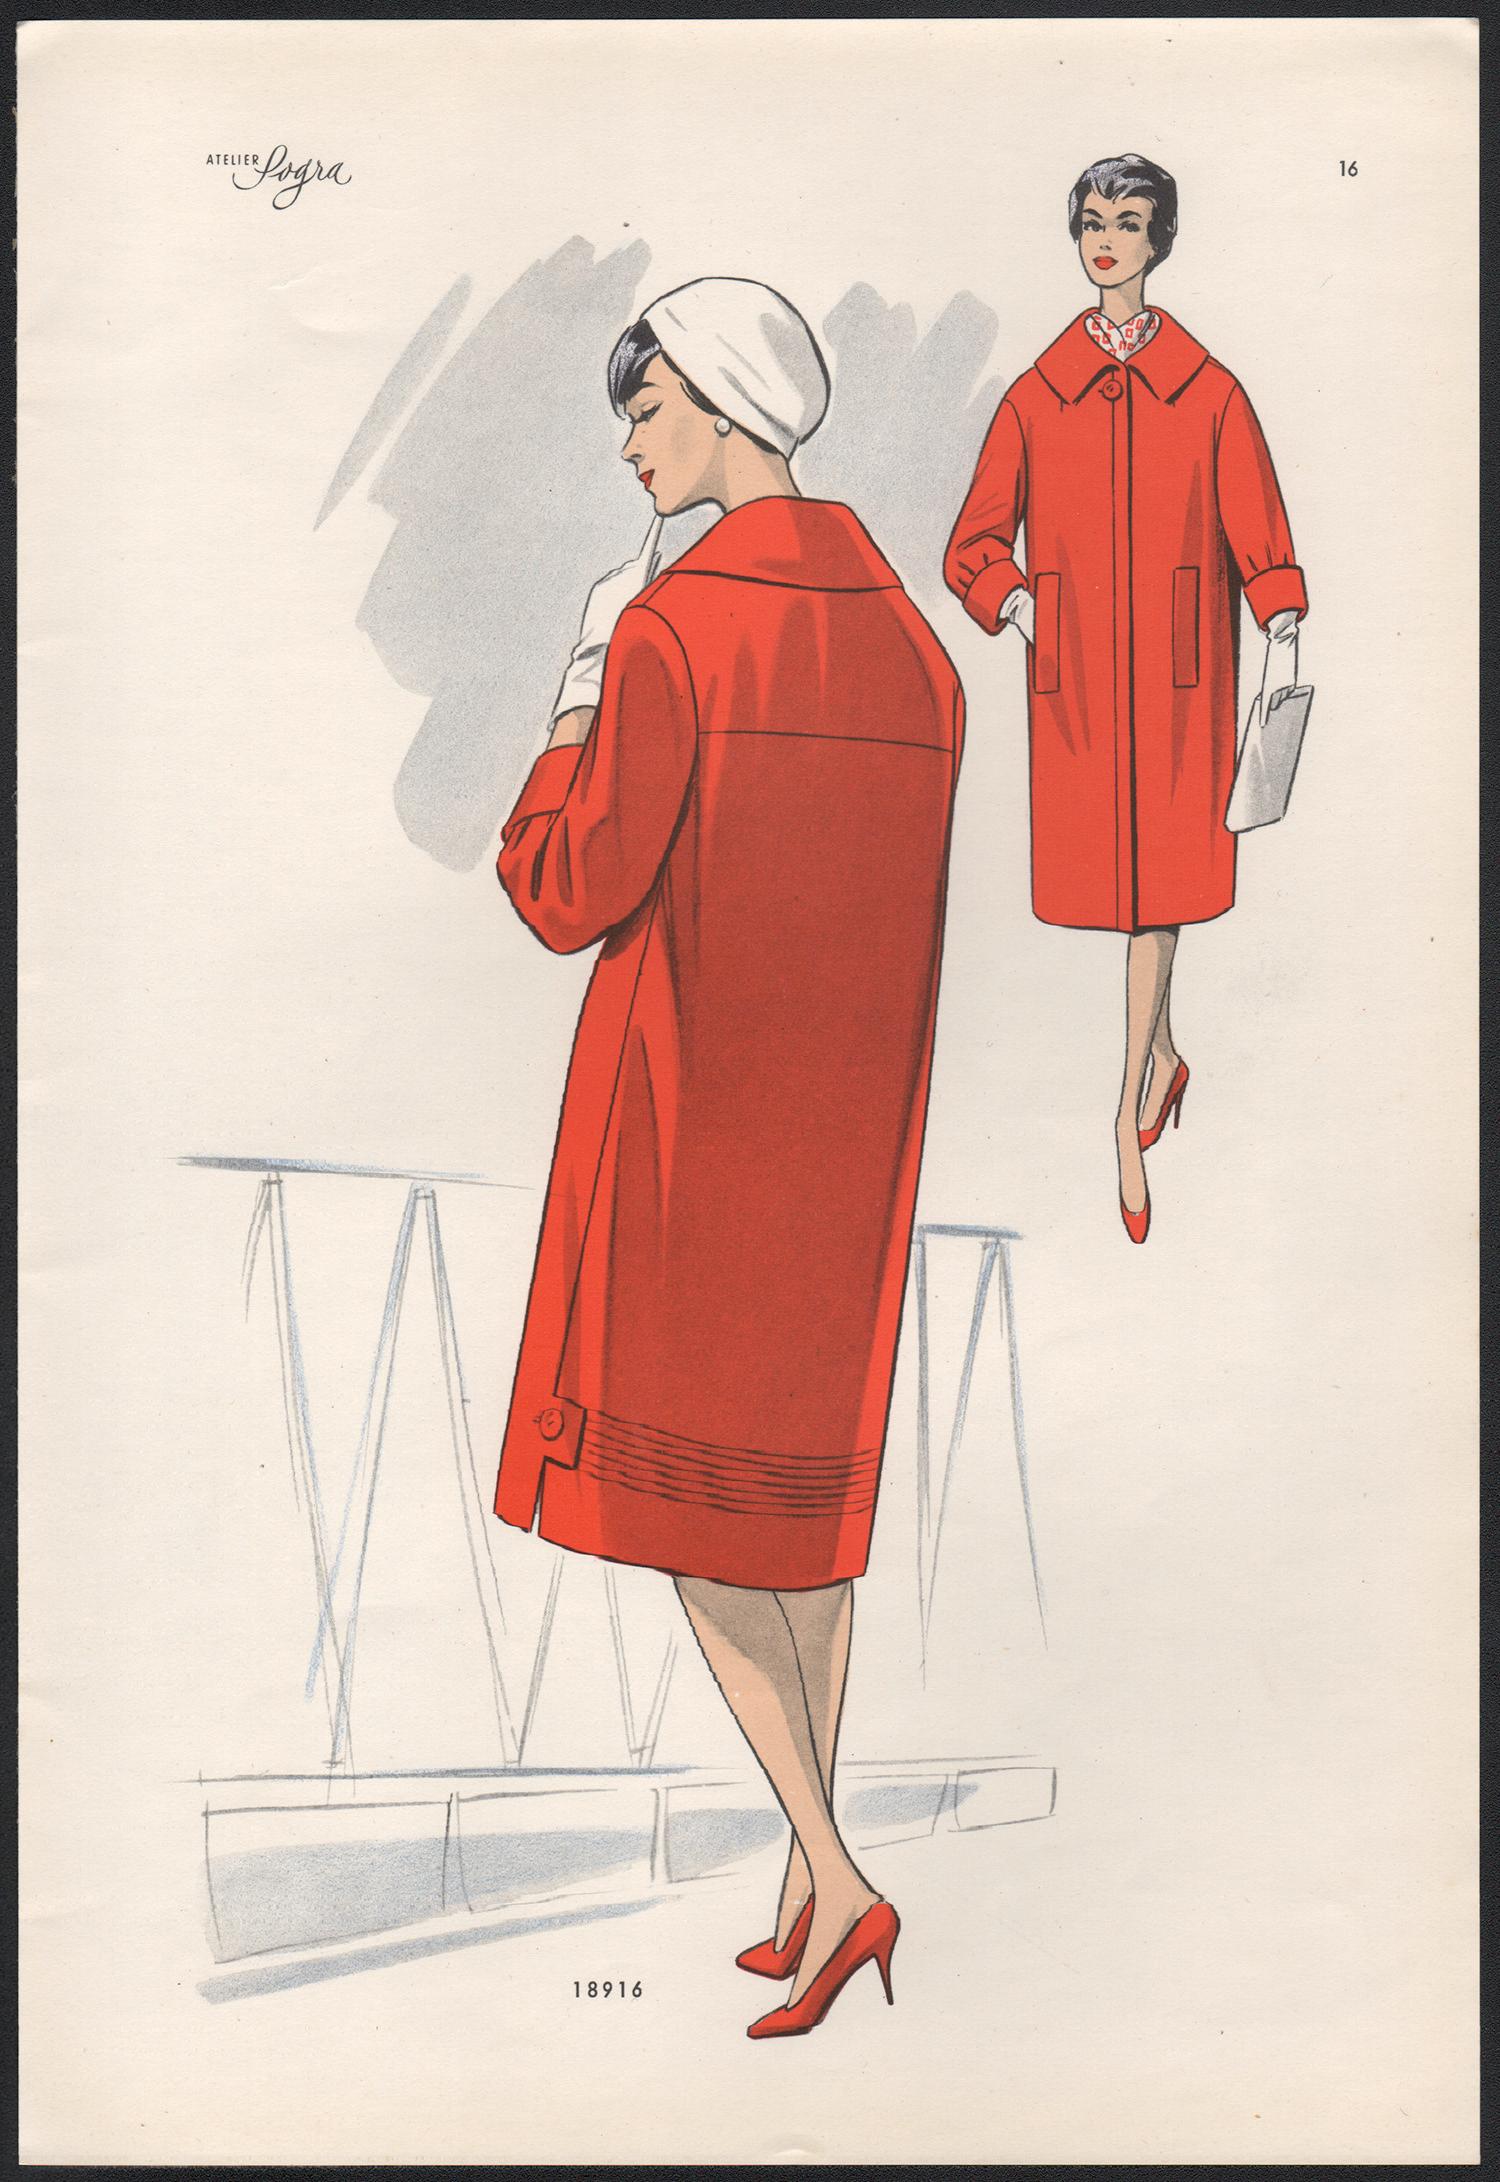 Europäisches Mid-Century 1959 Modedesign Vintage Lithographie Druck